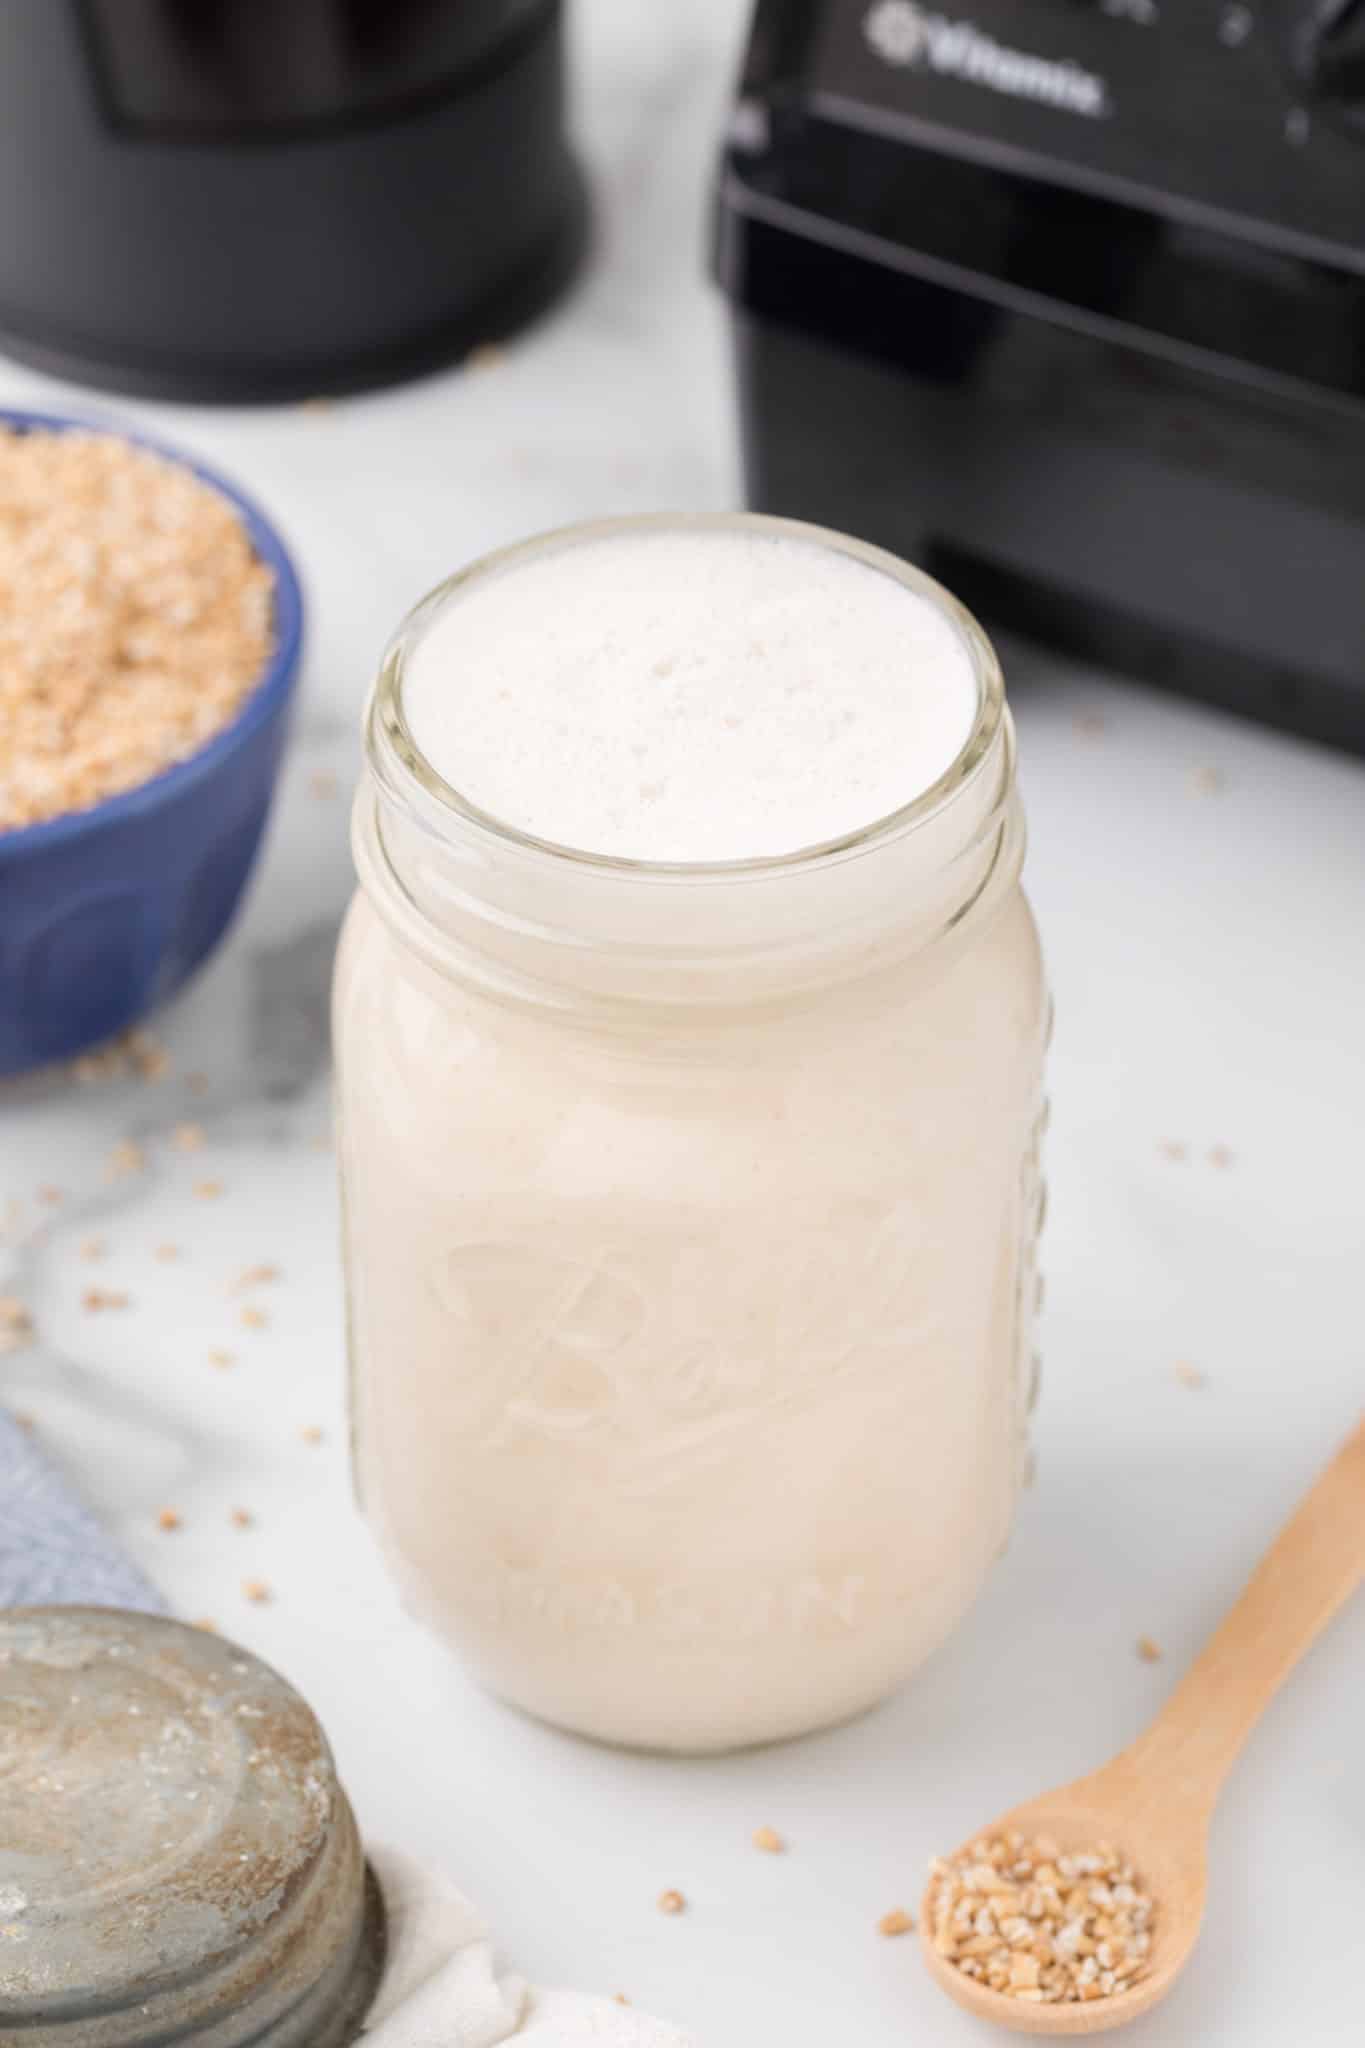 oat milk creamer in a jar on a tabletop.